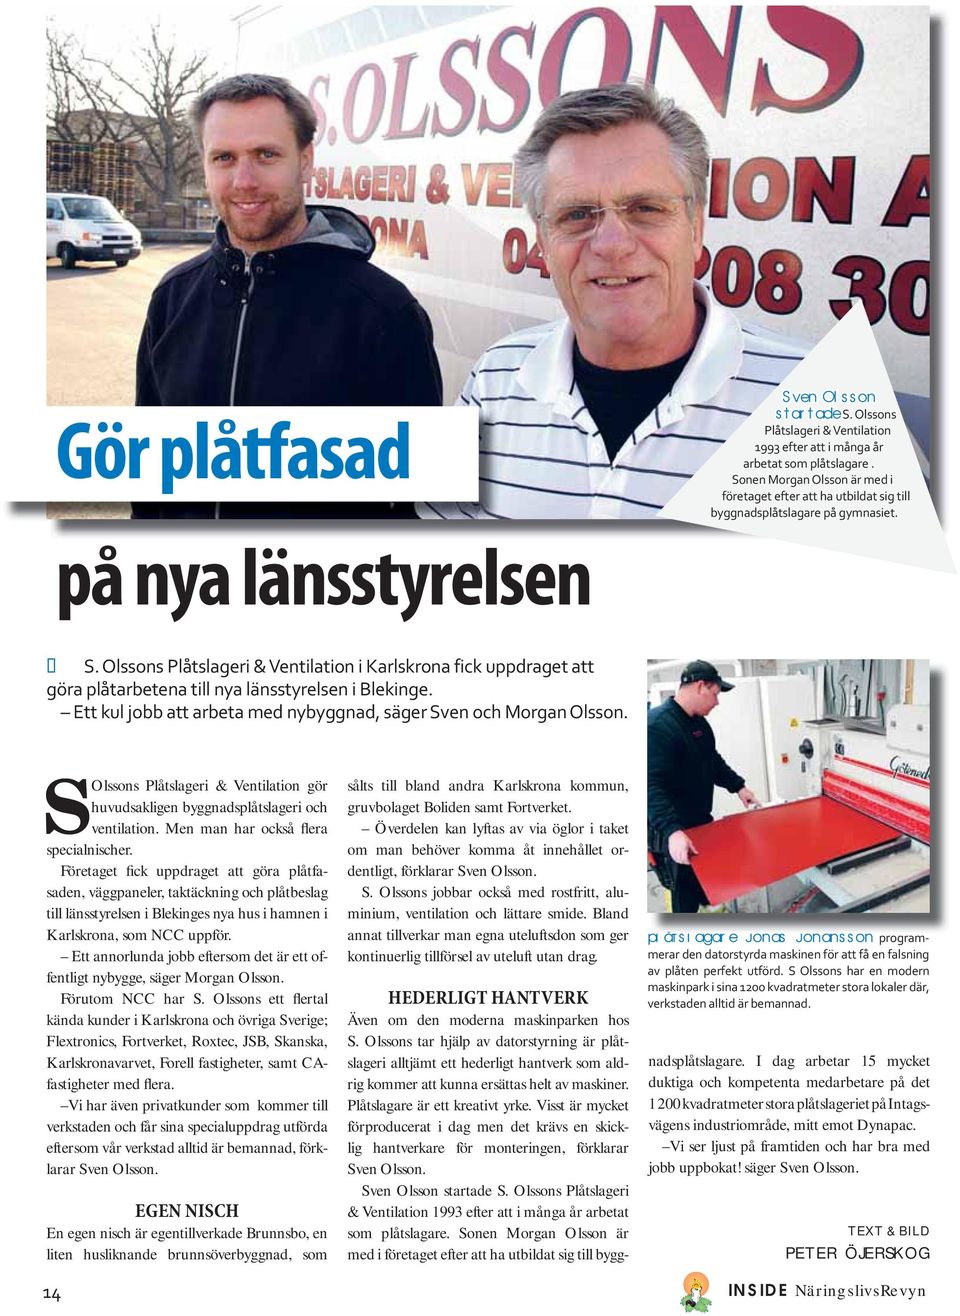 Olssons Plåtslageri & Ventilation i Karlskrona fick uppdraget att göra plåtarbetena till nya länsstyrelsen i Blekinge. Ett kul jobb att arbeta med nybyggnad, säger Sven och Morgan Olsson.